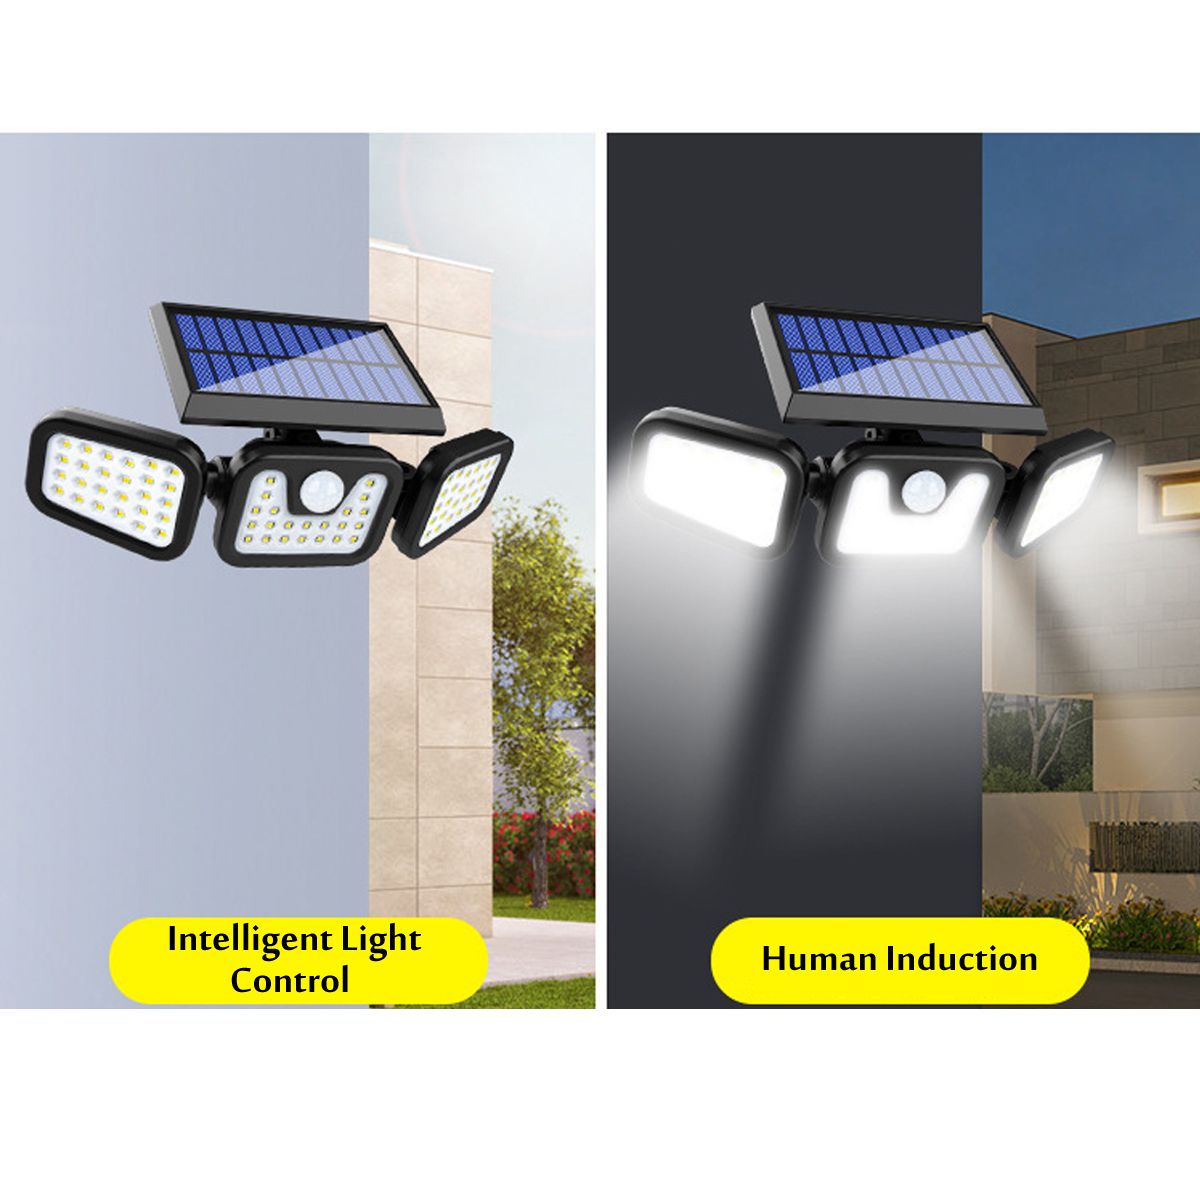 74LED100COB-Solar-Street-Wall-Light-PIR-Motion-Sensor-Waterproof-Garden-Spotlight-Lamp-1712557